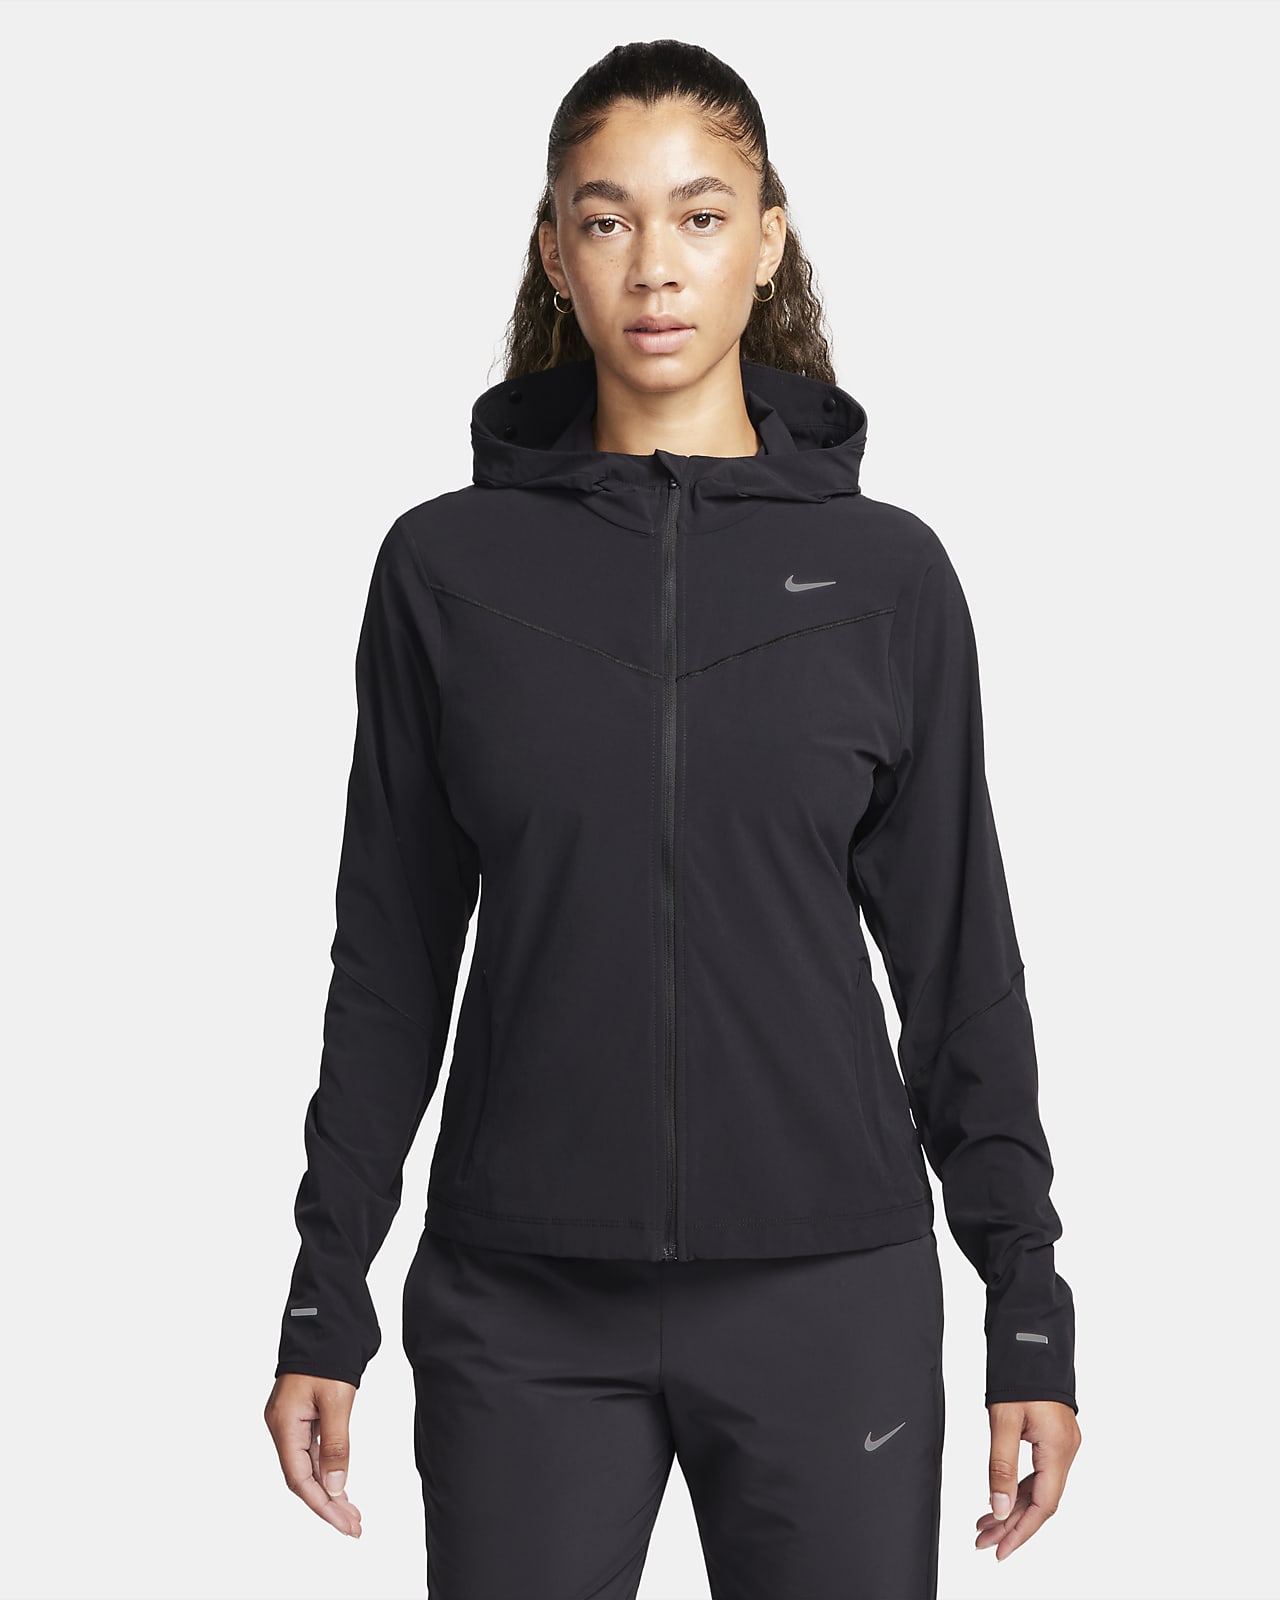 Löparjacka Nike Swift UV för kvinnor